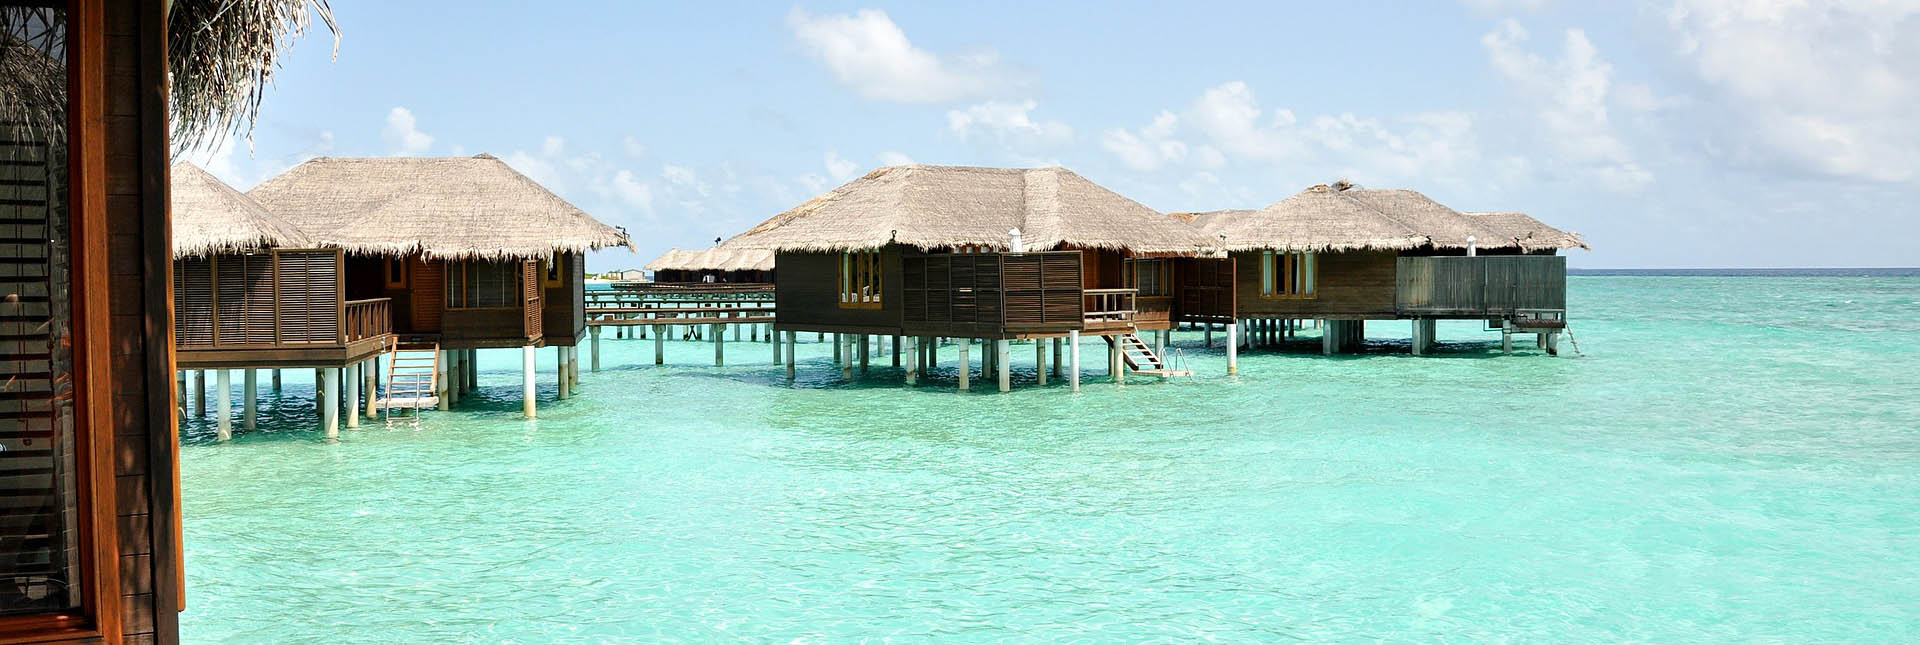 Отели на Мальдивах – цены, онлайн бронирование номеров